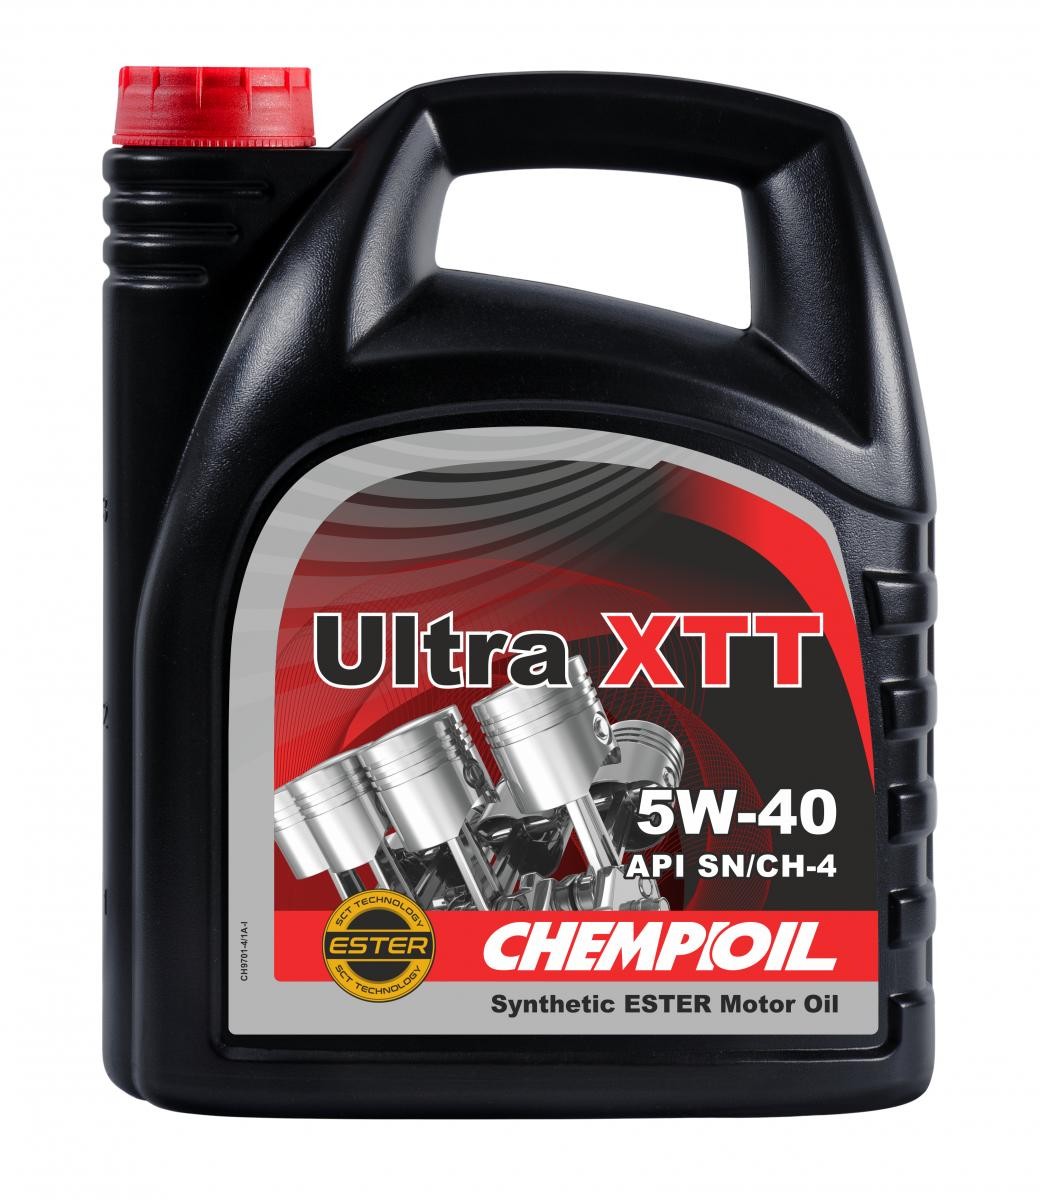 Buy Auto oil CHEMPIOIL diesel CH9701-4 Ultra, XTT 5W-40, 4l